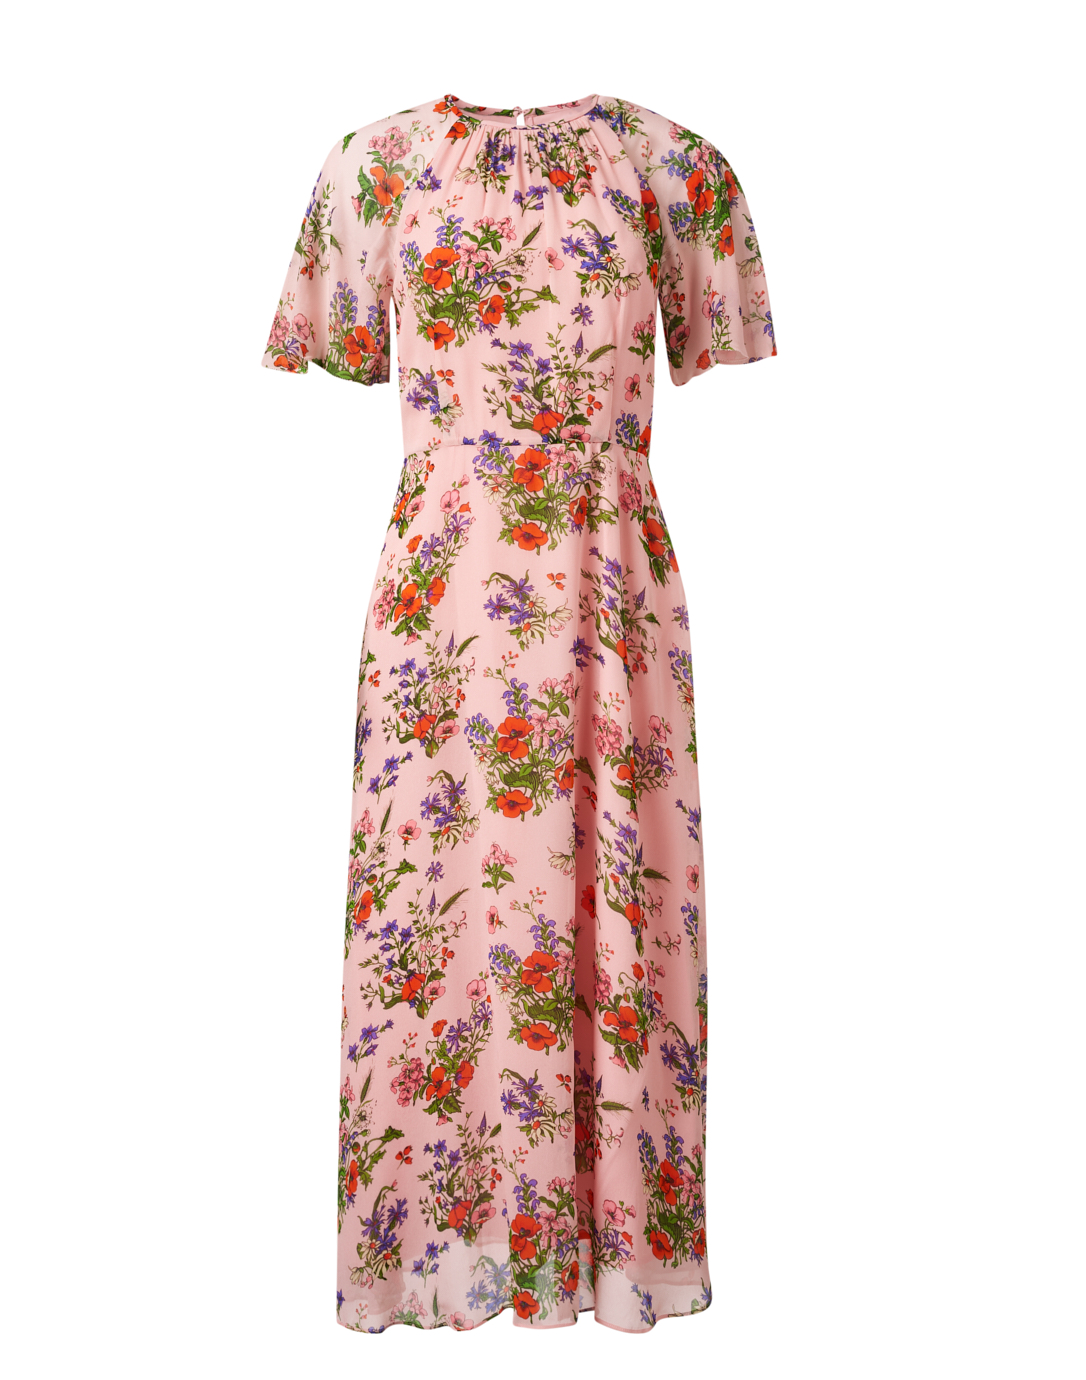 Elowen Pink Print Dress | L.K. Bennett